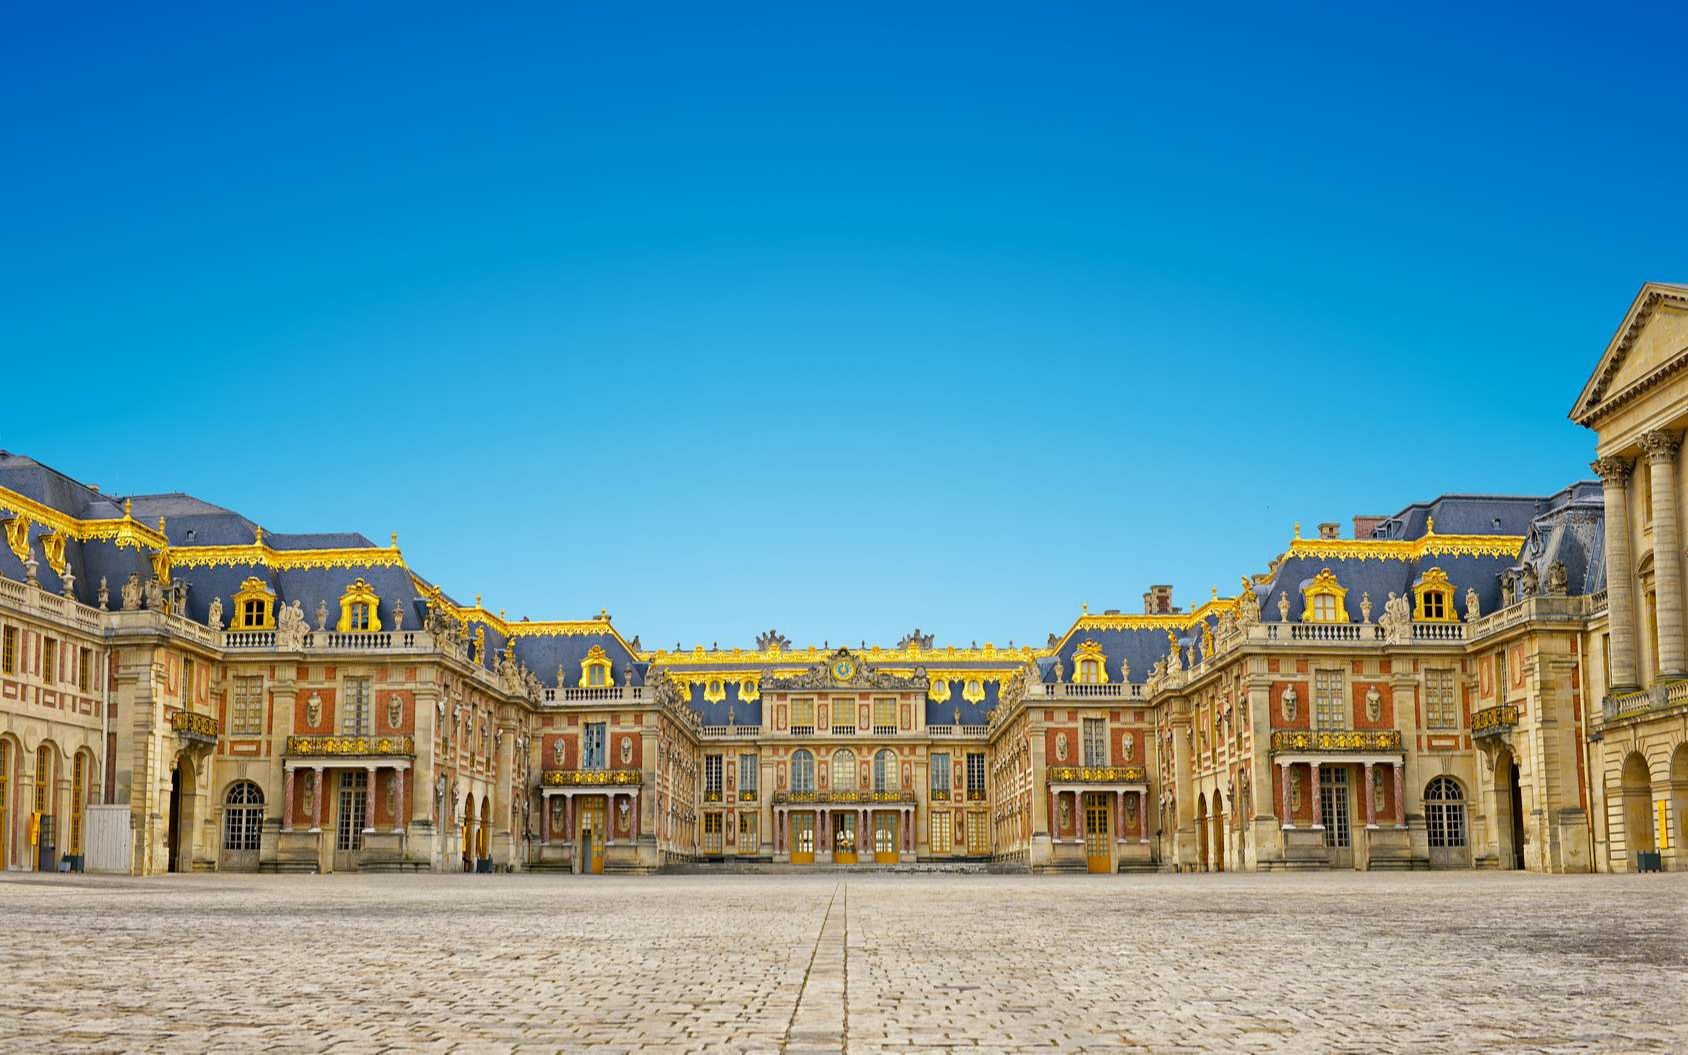 法国巴黎卫星城,著名的凡尔赛宫便位于此地